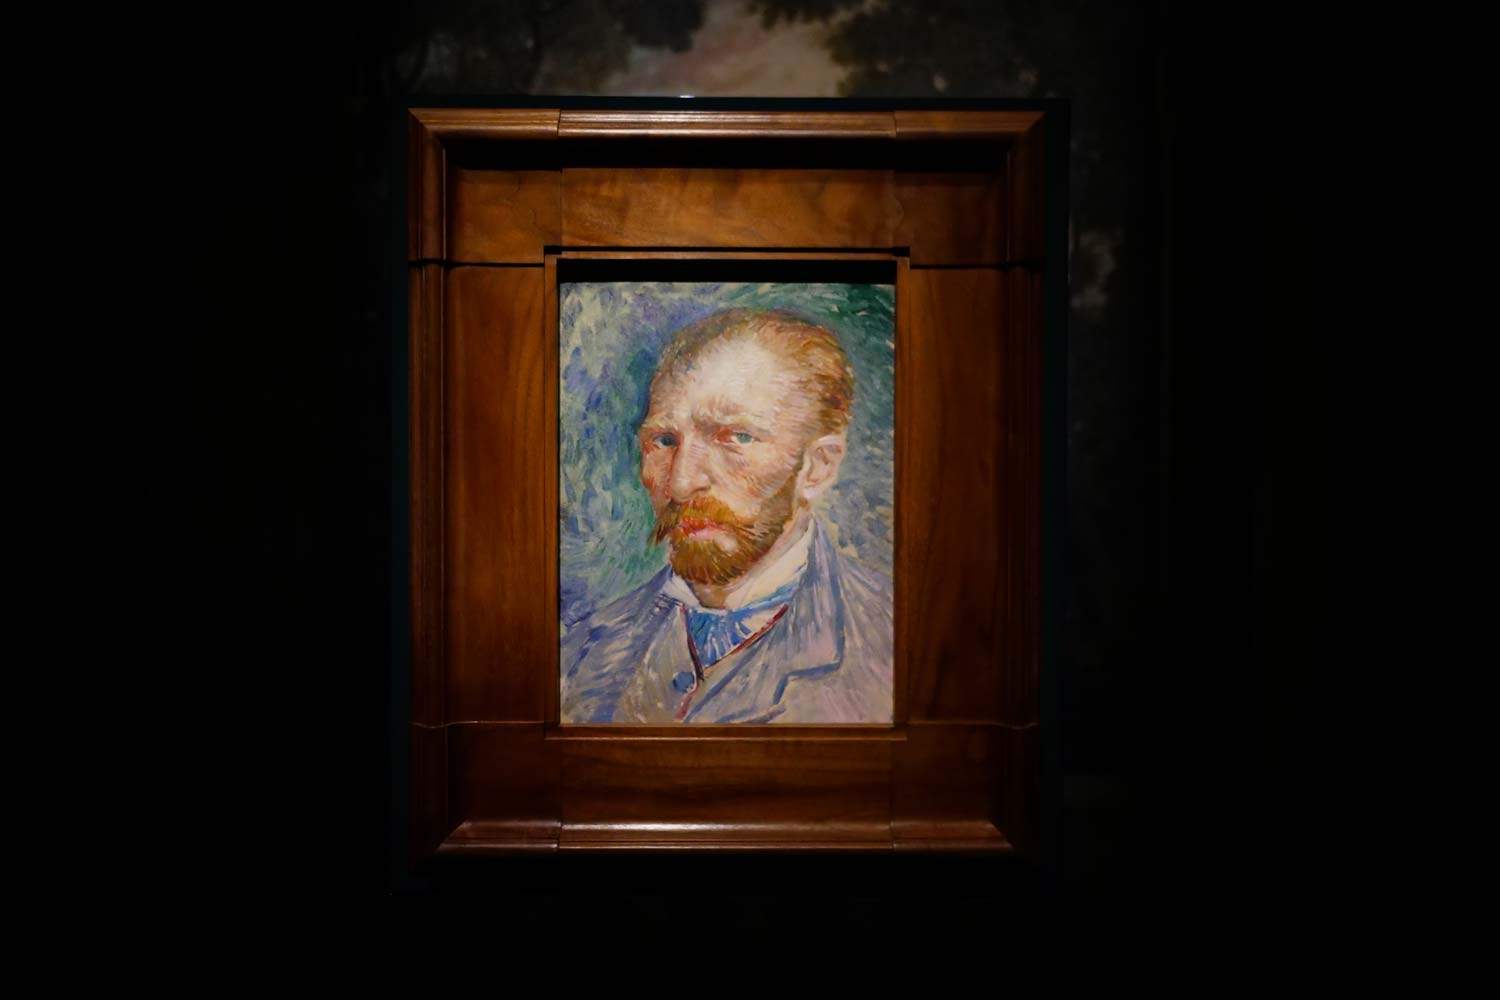 La mostra su Van Gogh a Roma si chiude con numeri incredibili: quasi 600mila visitatori